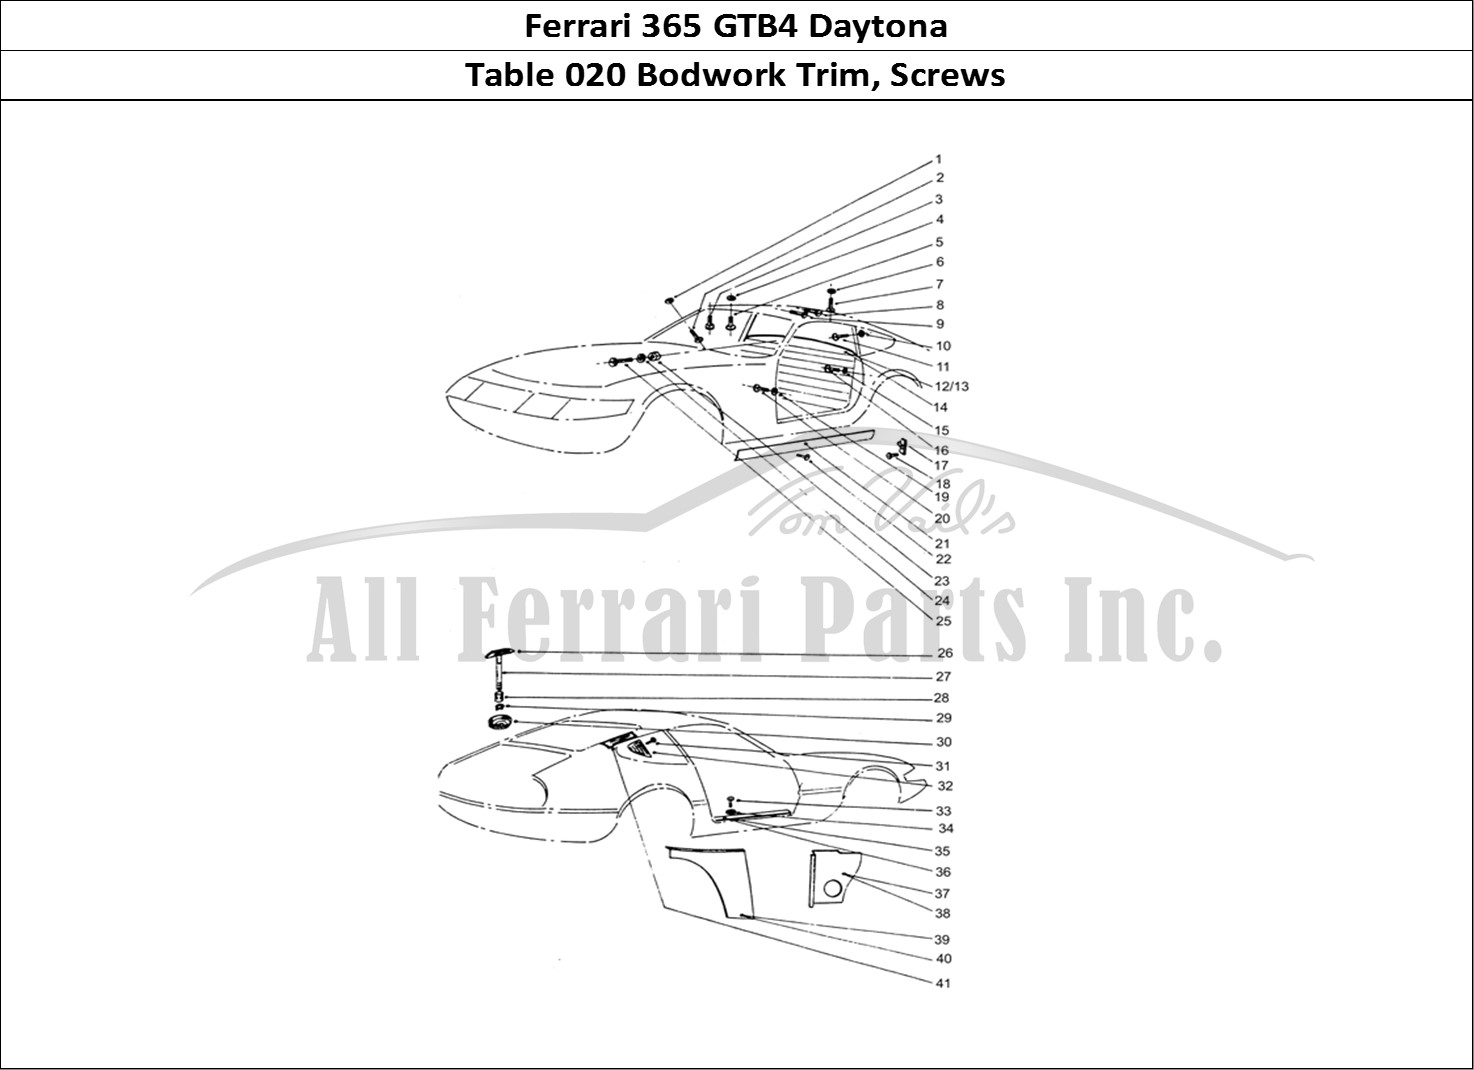 Ferrari Parts Ferrari 365 GTB4 Daytona (Coachwork) Page 020 Trim Screws